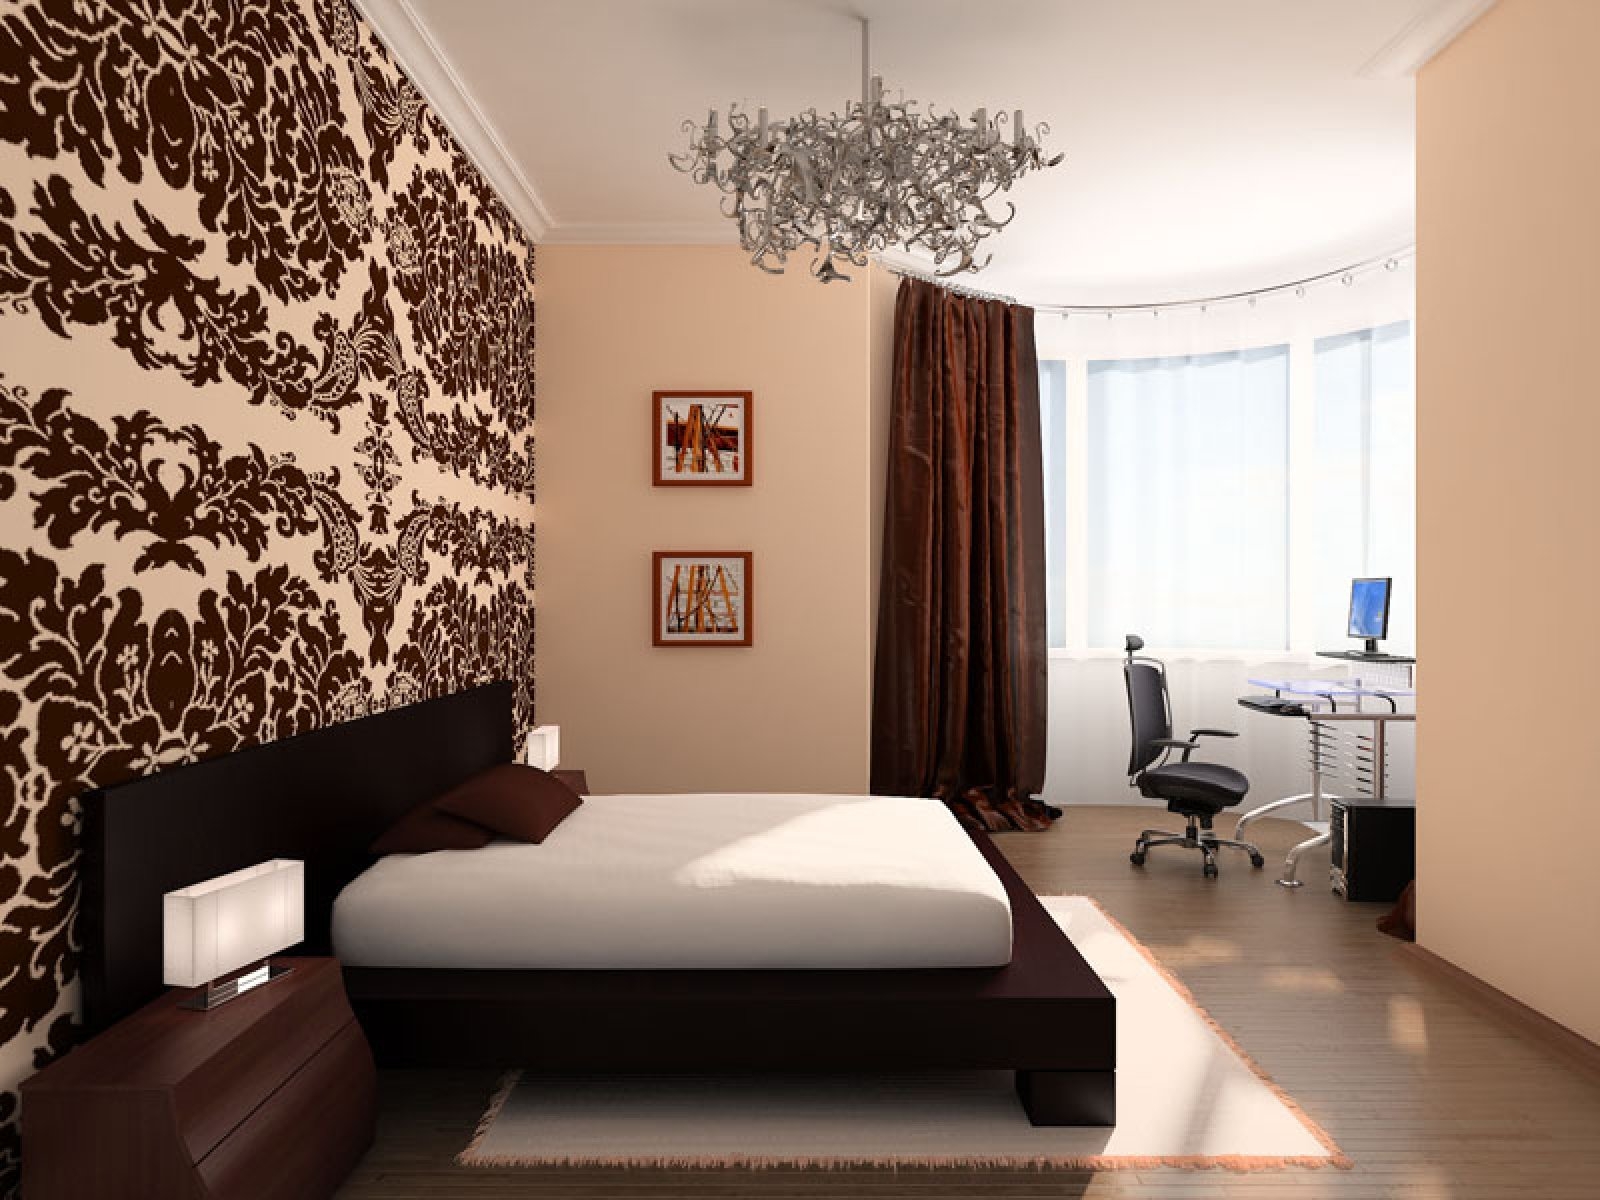 Дизайн комнат виды. Обои для спальни комбинированные. Обои в маленькую комнату. Спальня в коричневых тонах. Обои в интерьере квартиры.